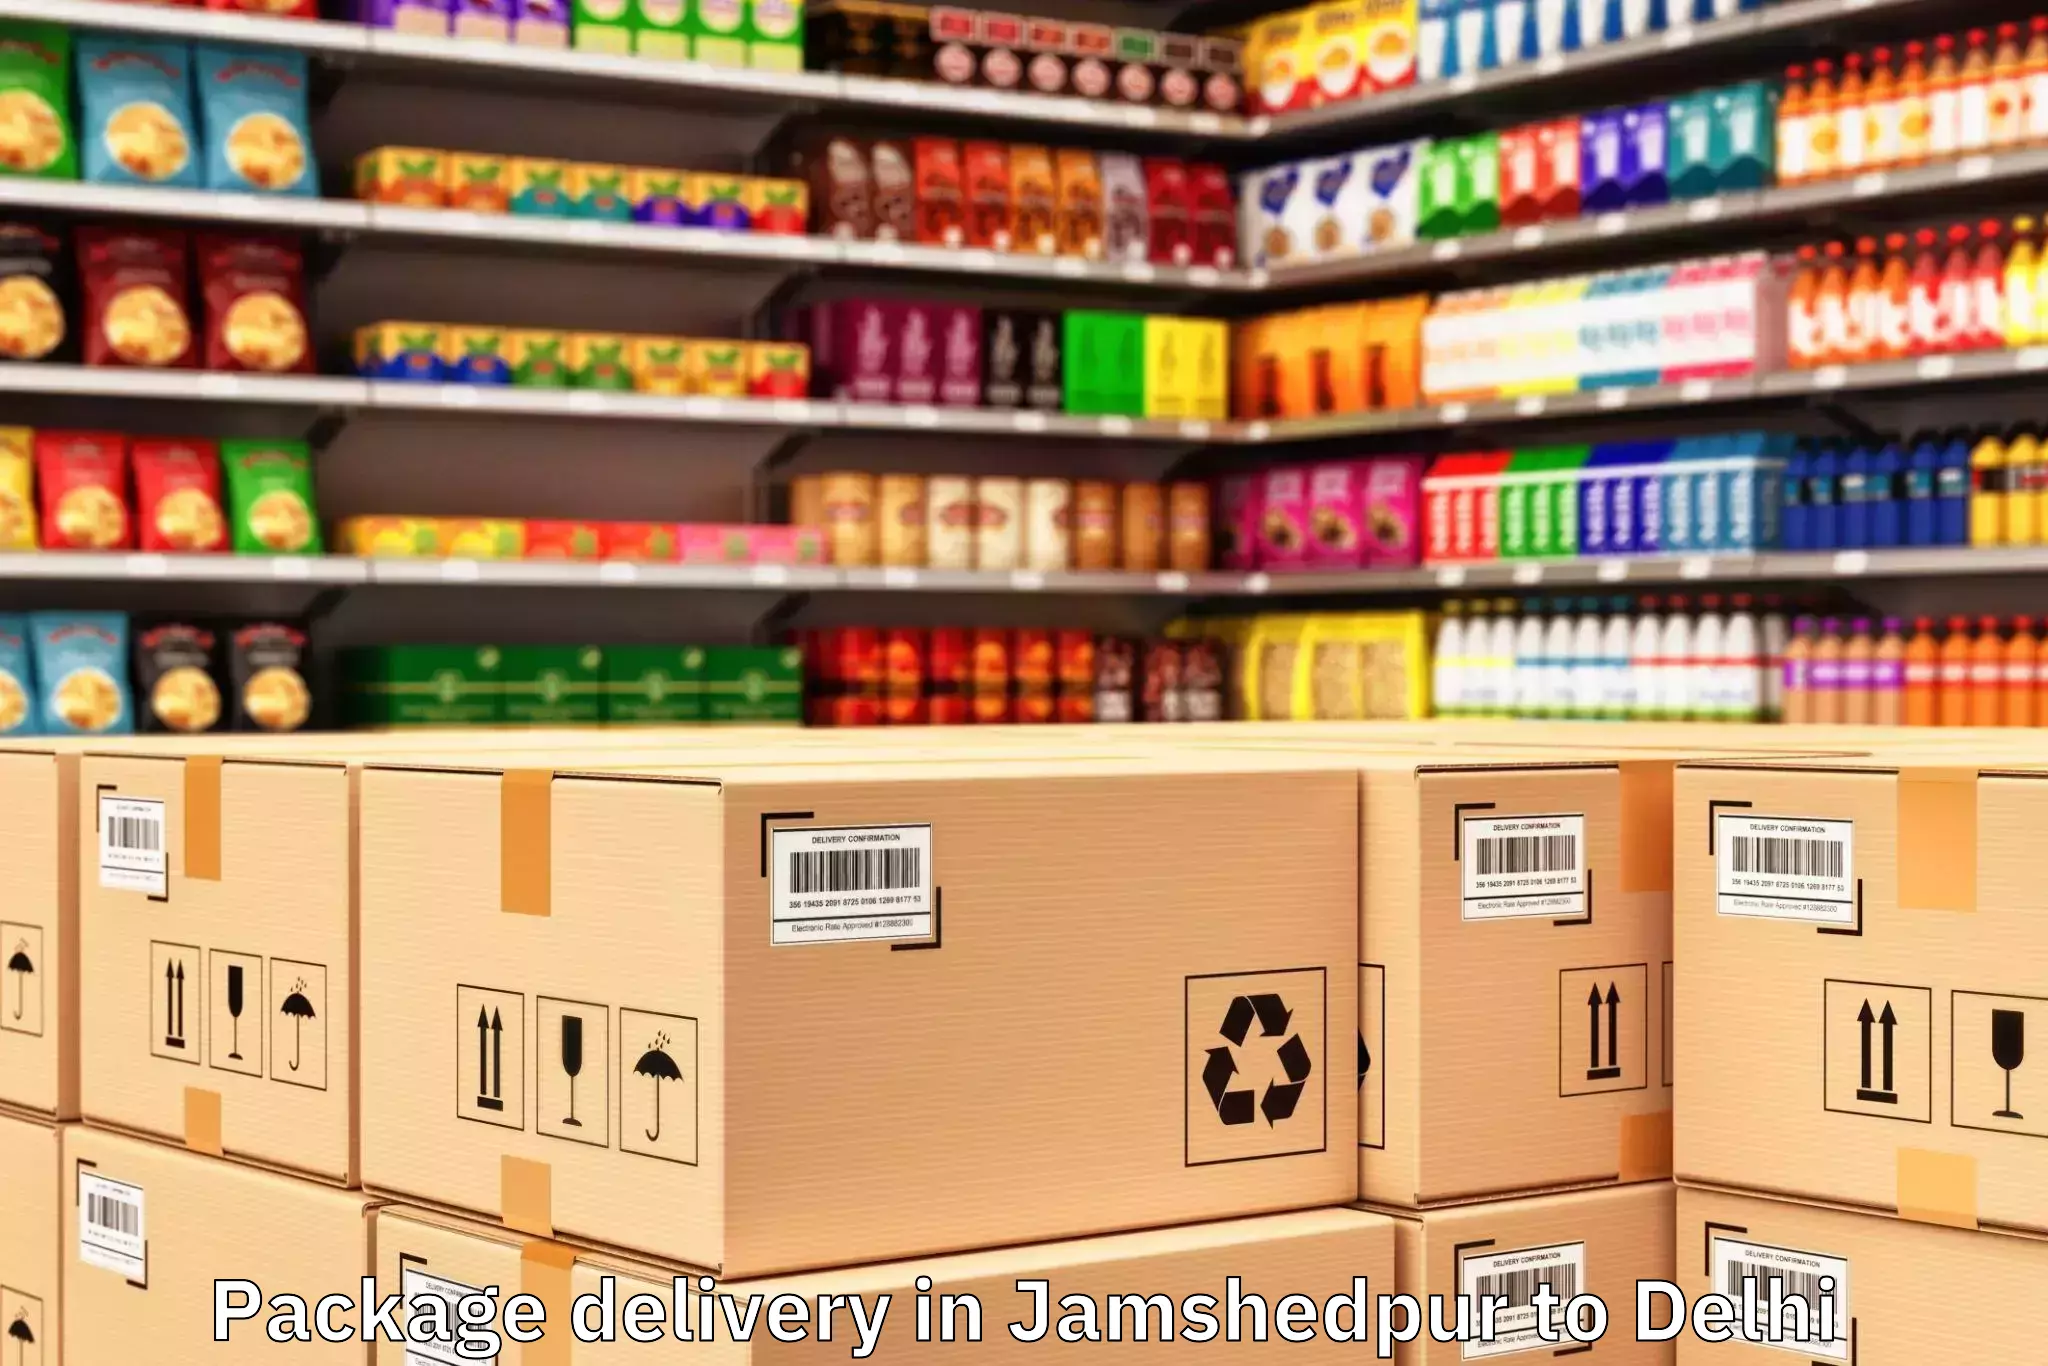 Get Jamshedpur to Delhi Package Delivery